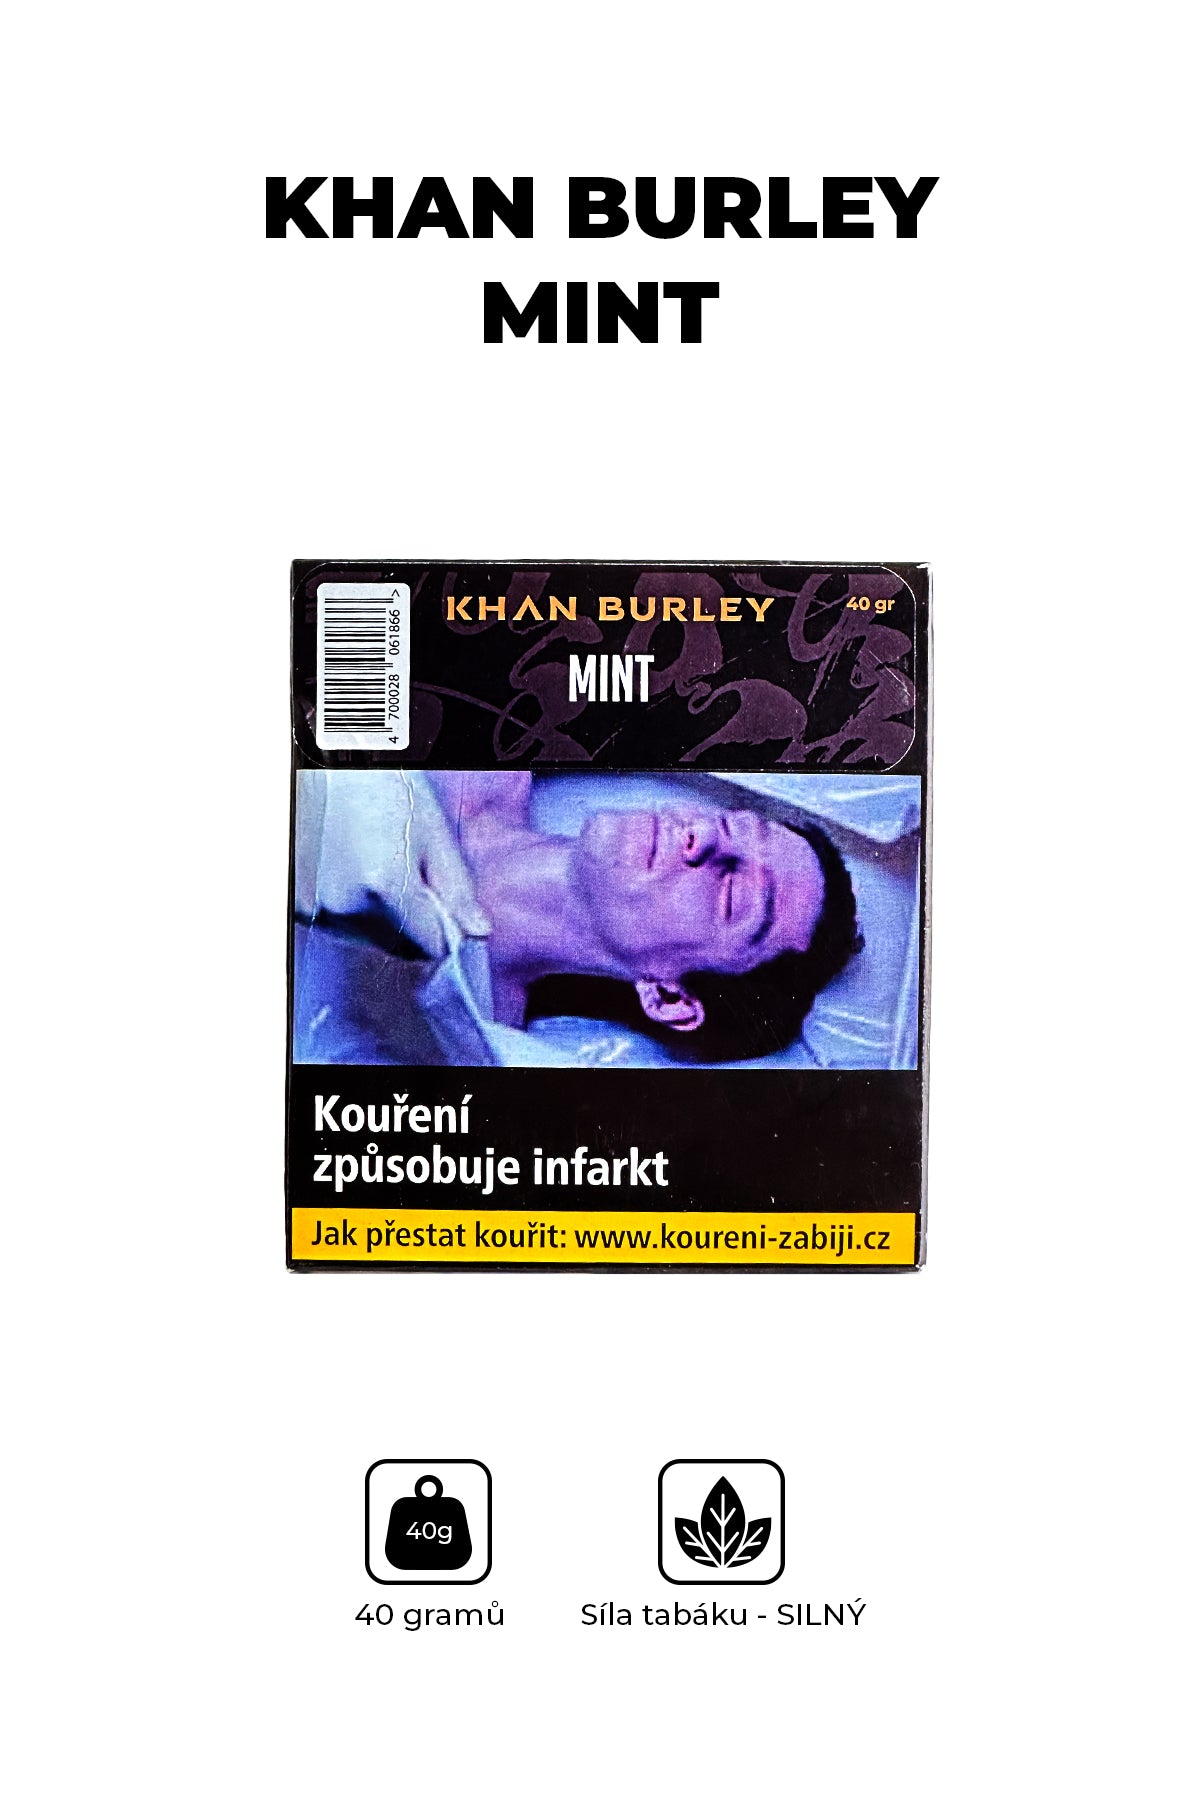 Tabák - Khan Burley 40g - Mint